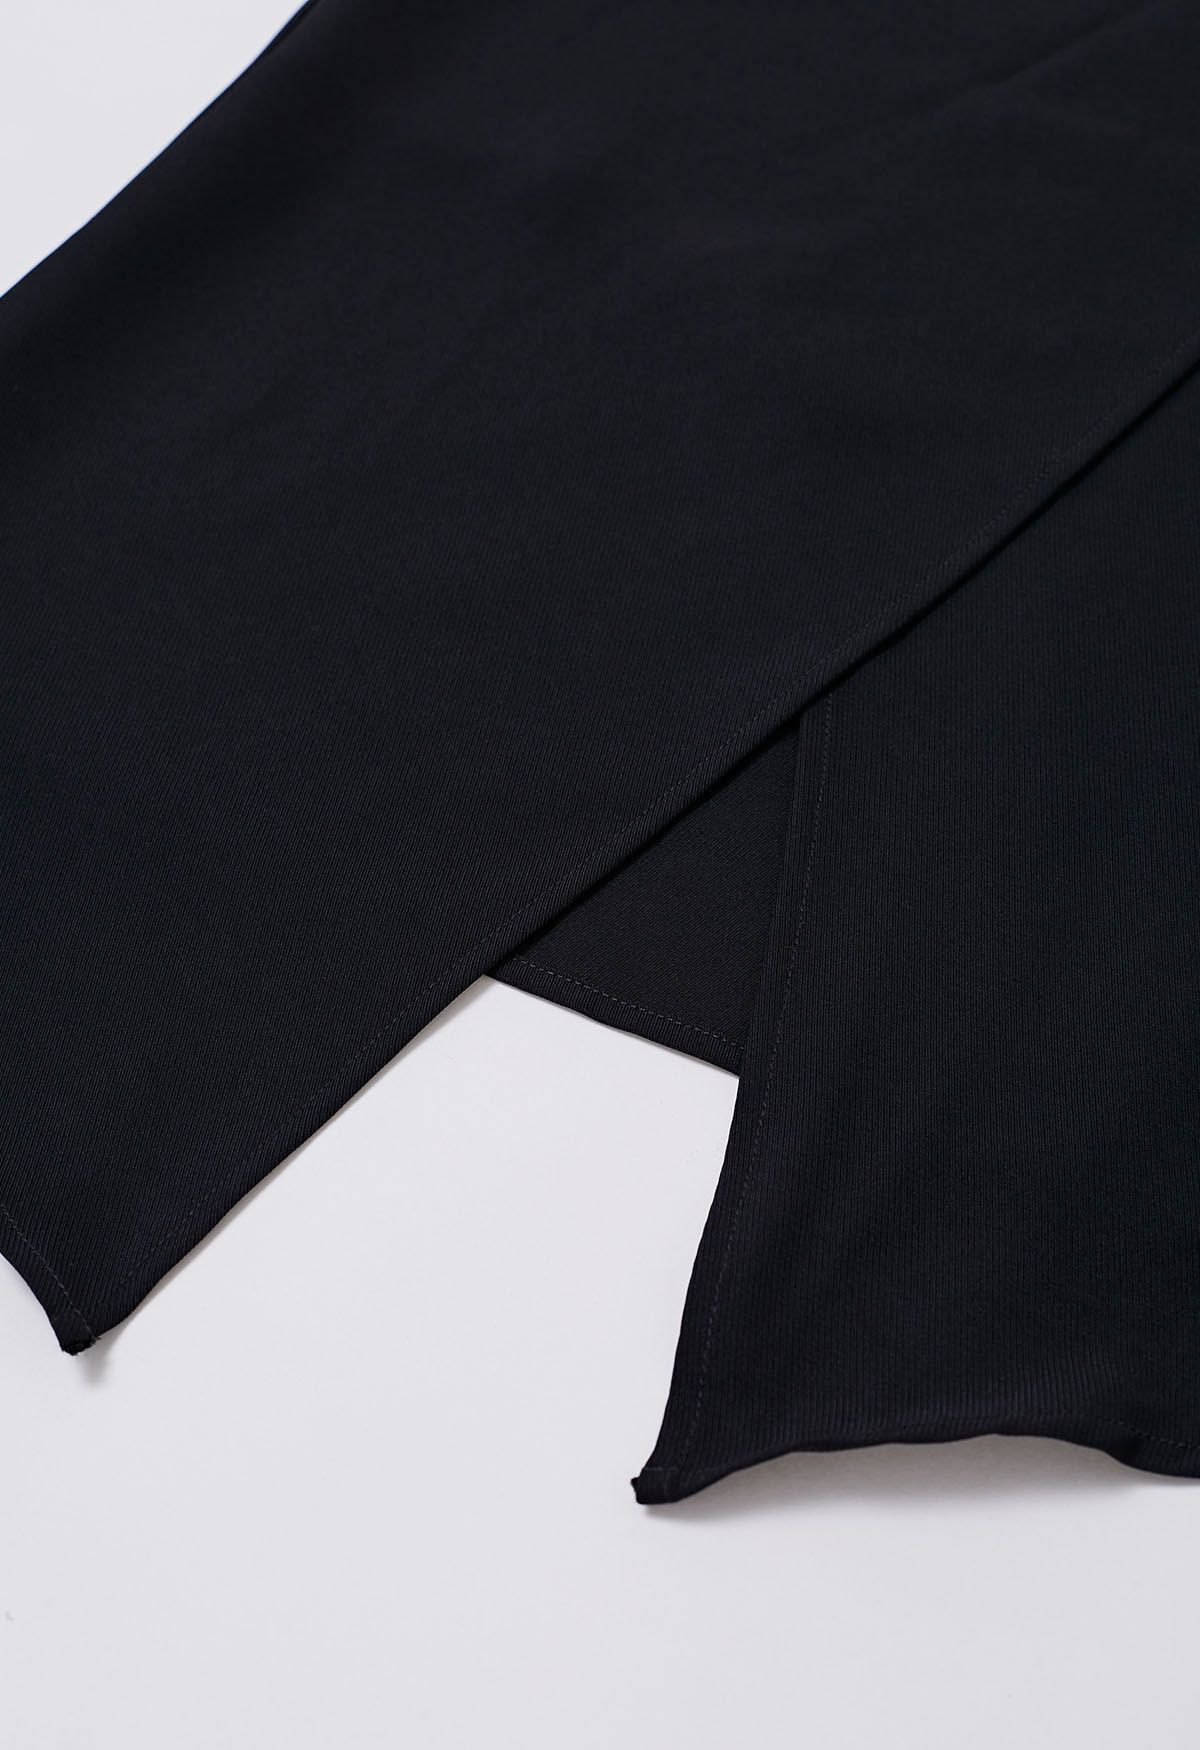 Falda midi con solapa irregular y pliegues abotonados en negro